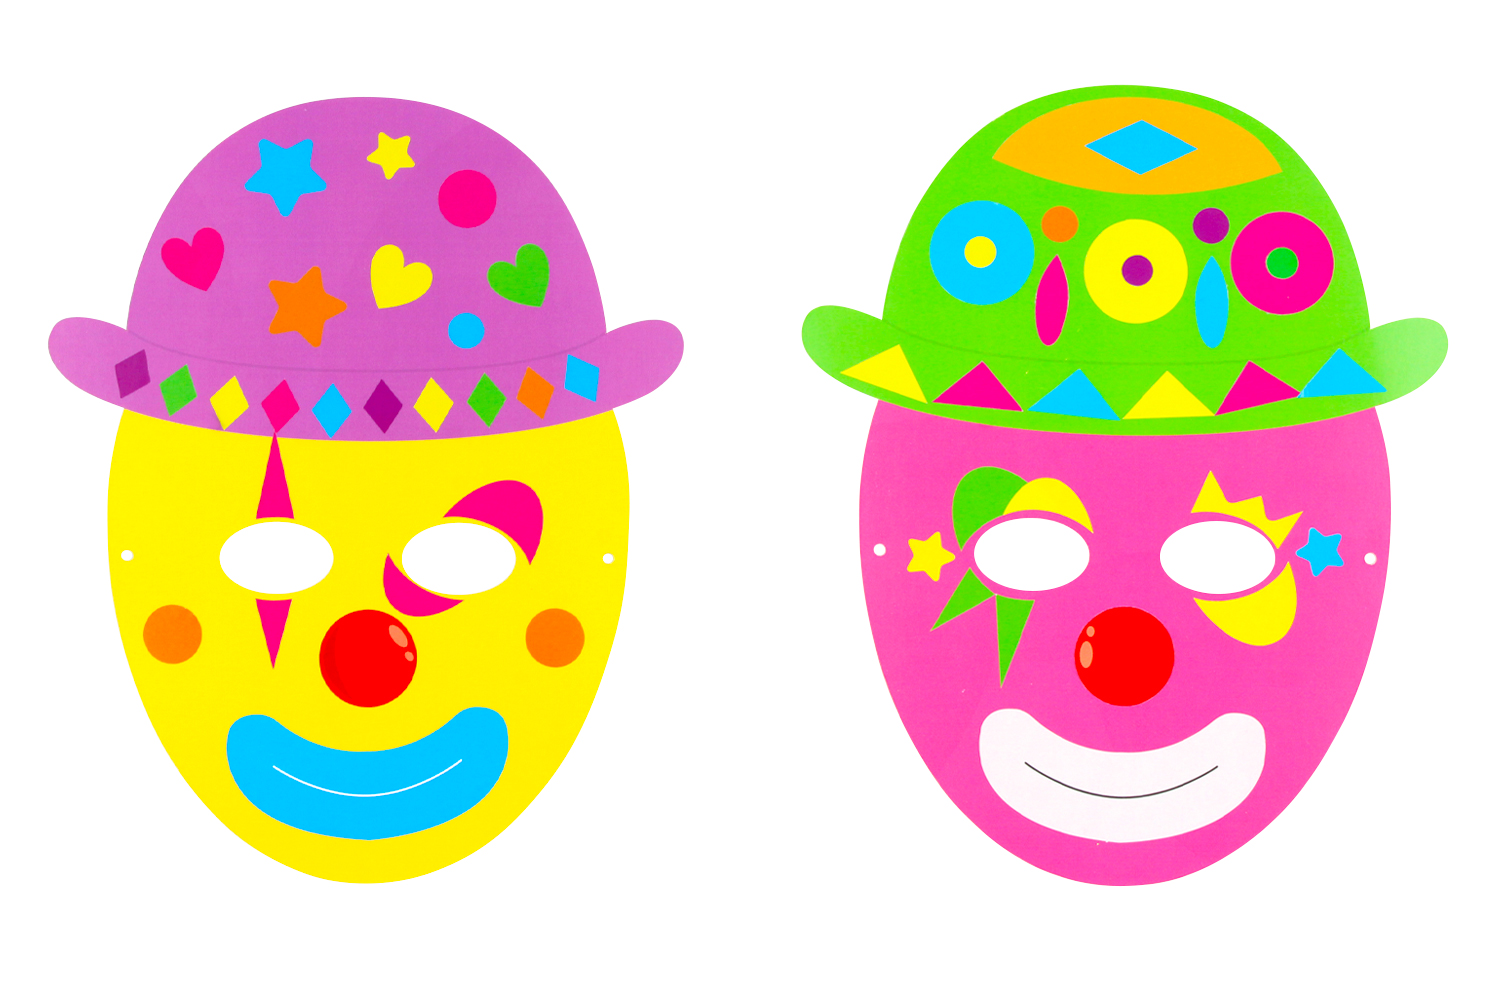 Activité de gommettes : créer un clown rigolo